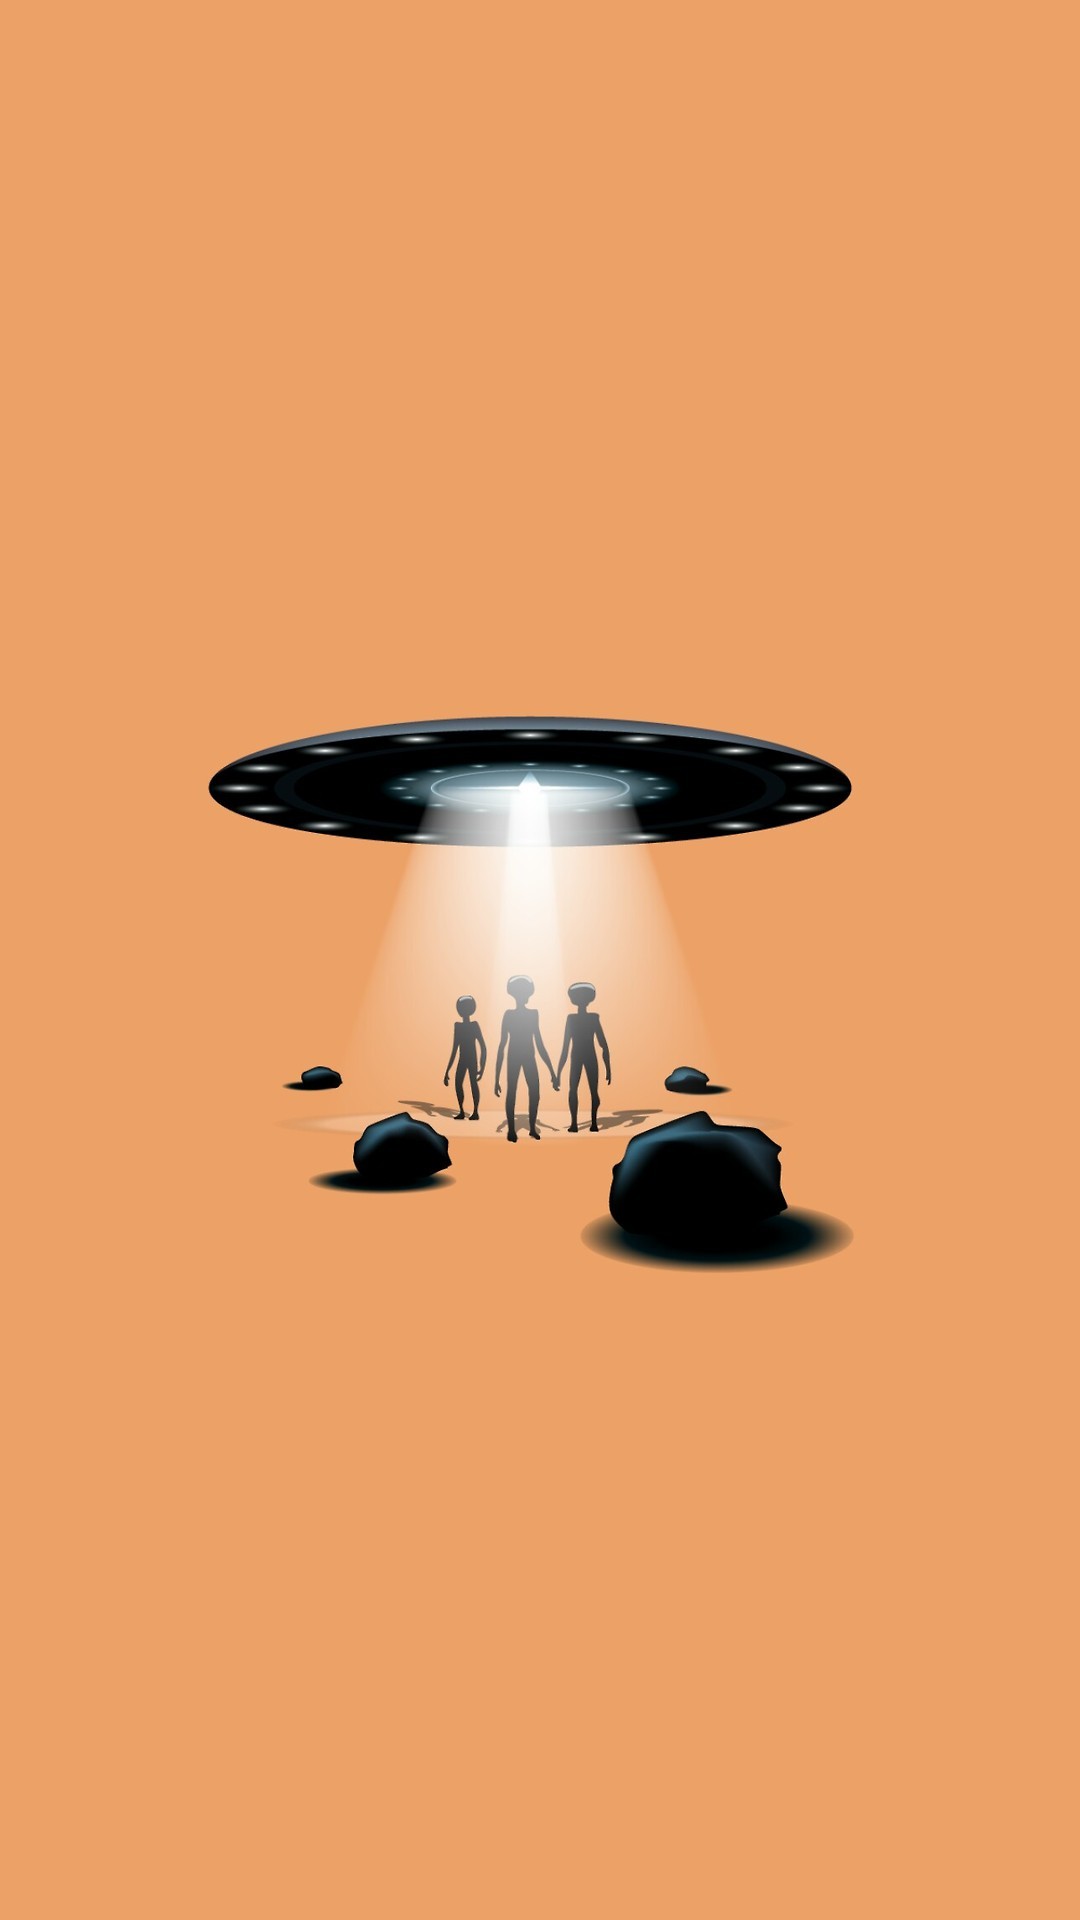 fondos-de-pantalla-kulz: Aliens 👽 - iPhone art